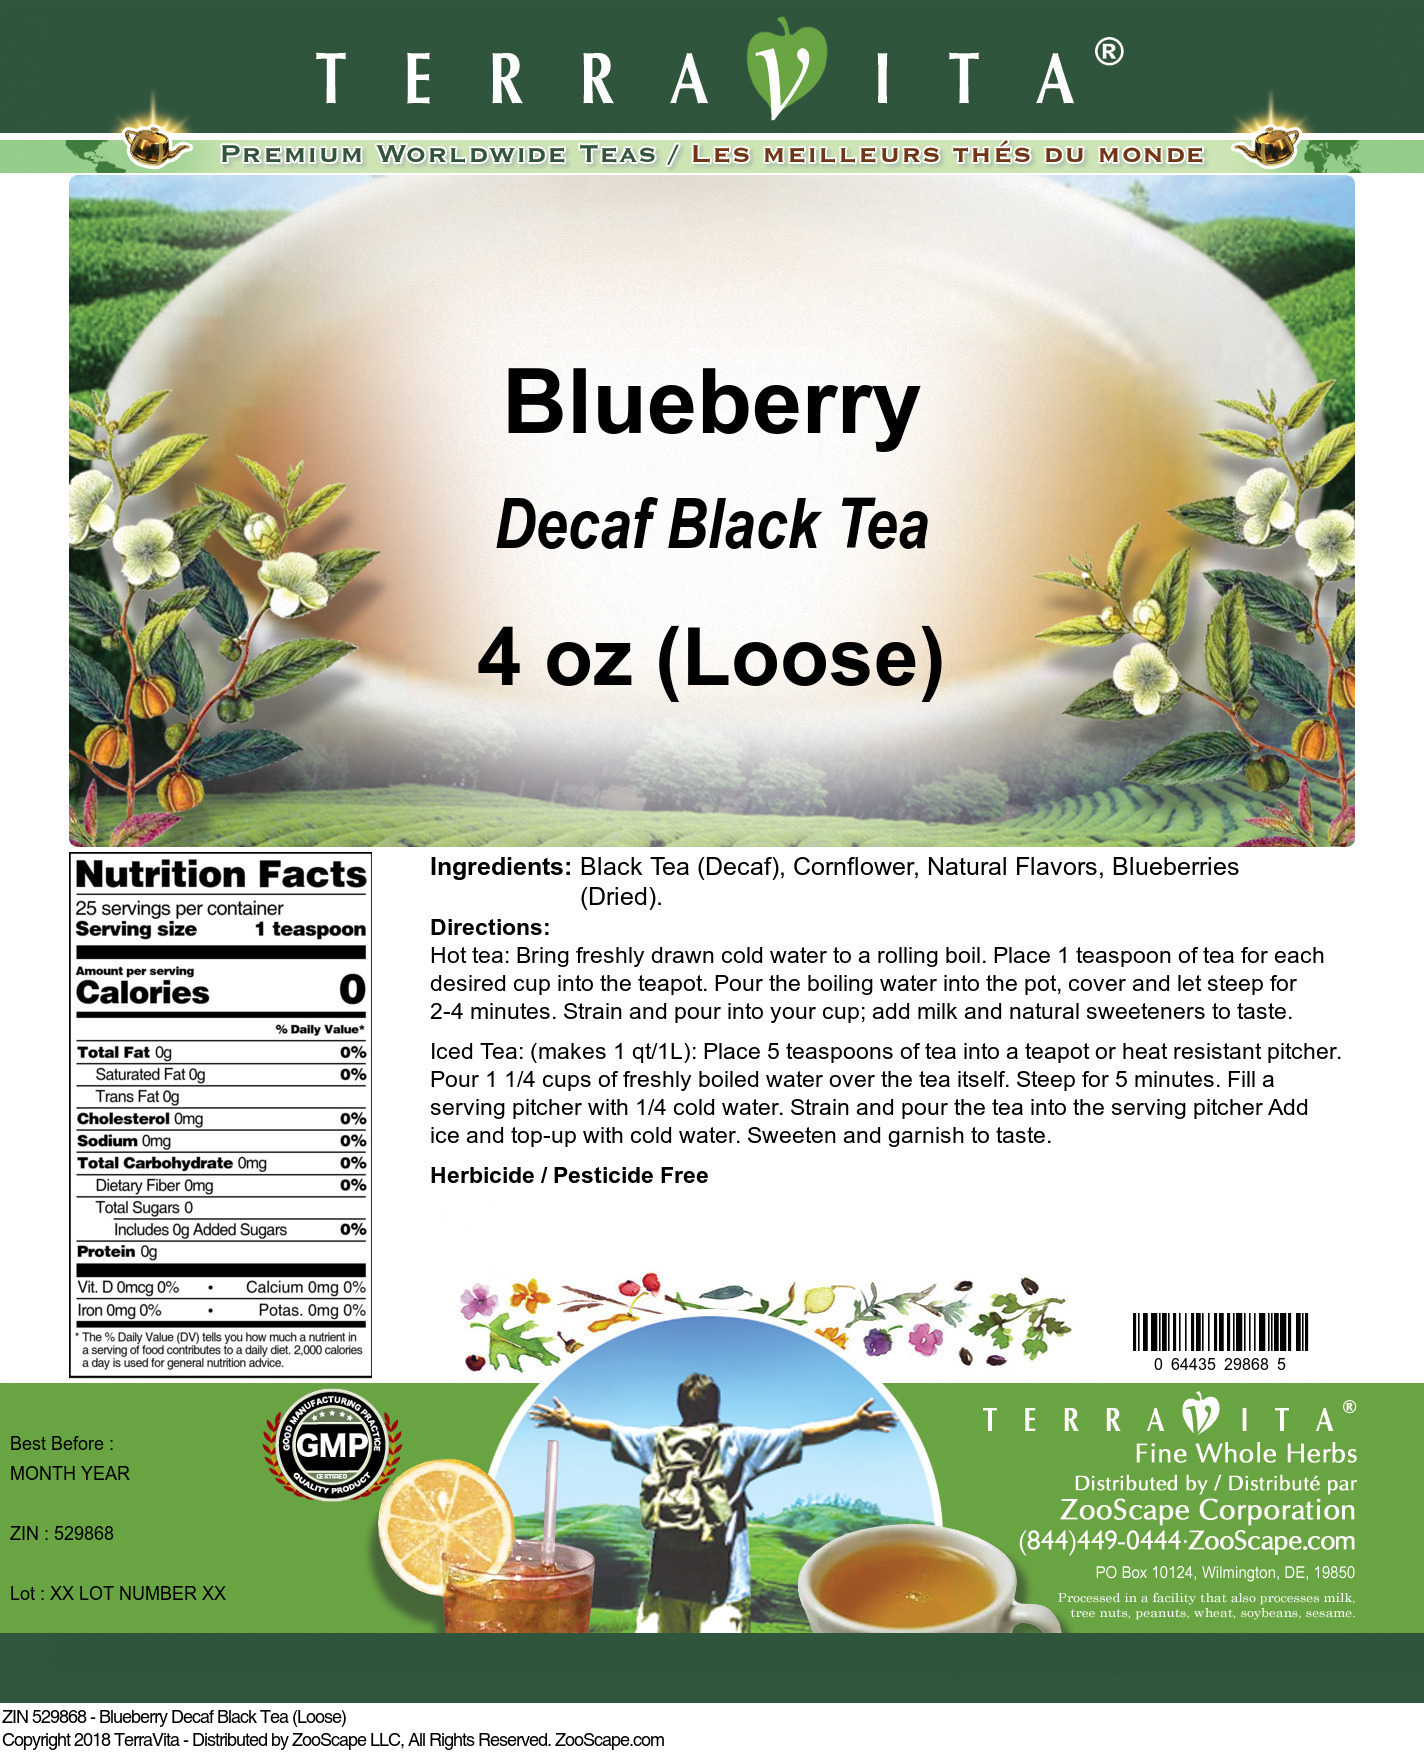 Blueberry Decaf Black Tea (Loose) - Label